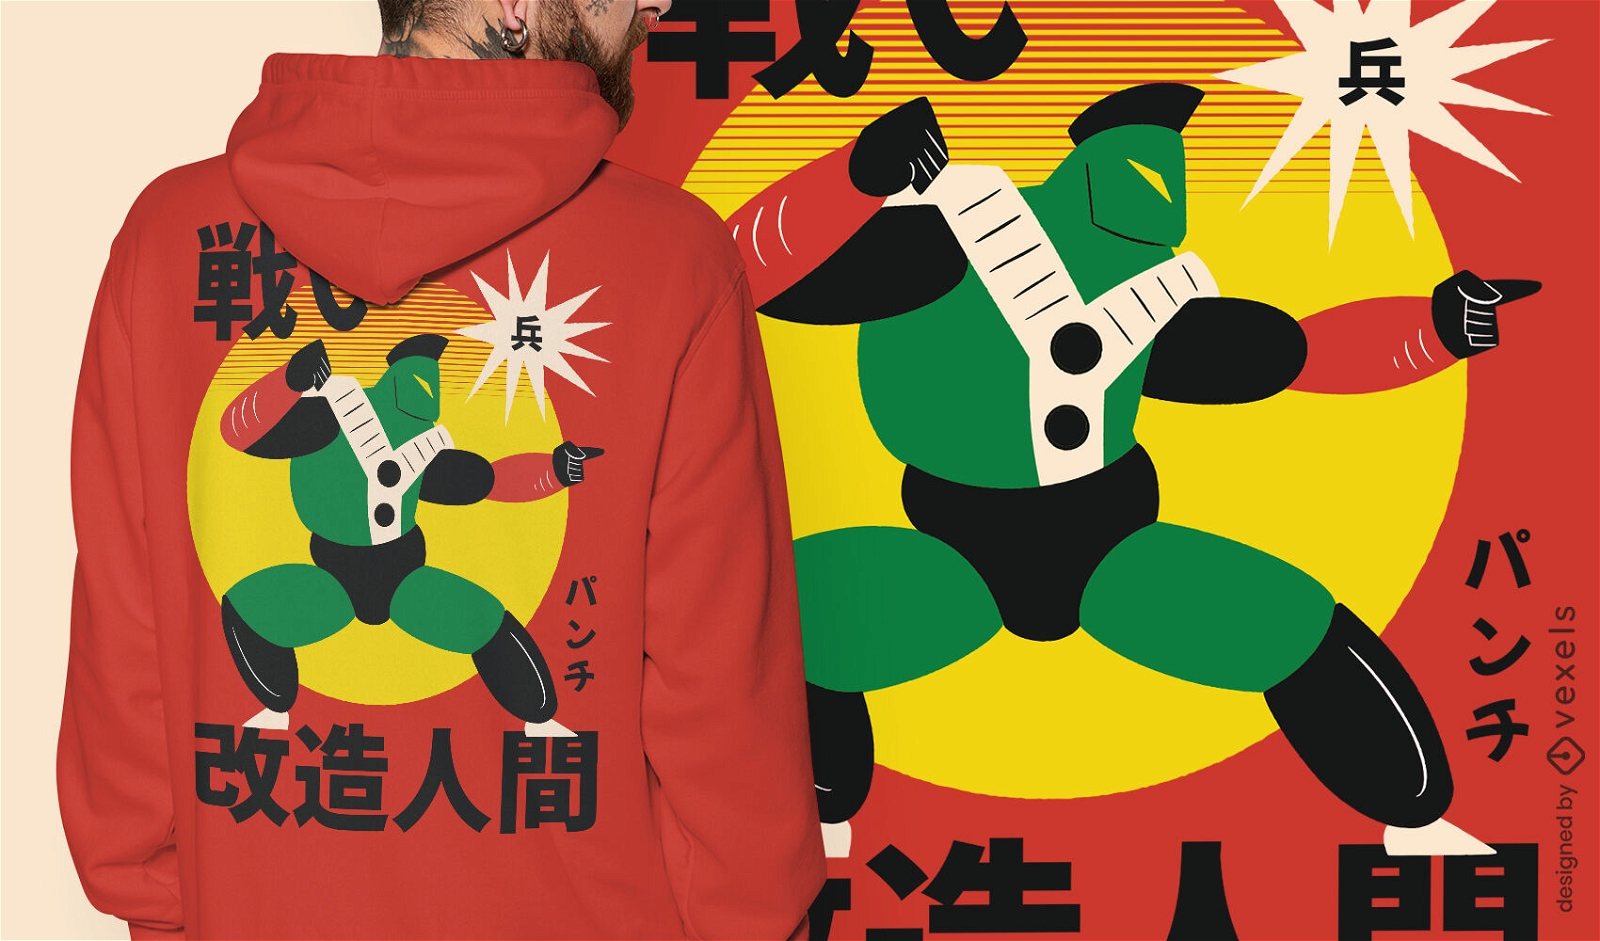 Grünes japanisches Roboter-Krieger-T-Shirt-Design